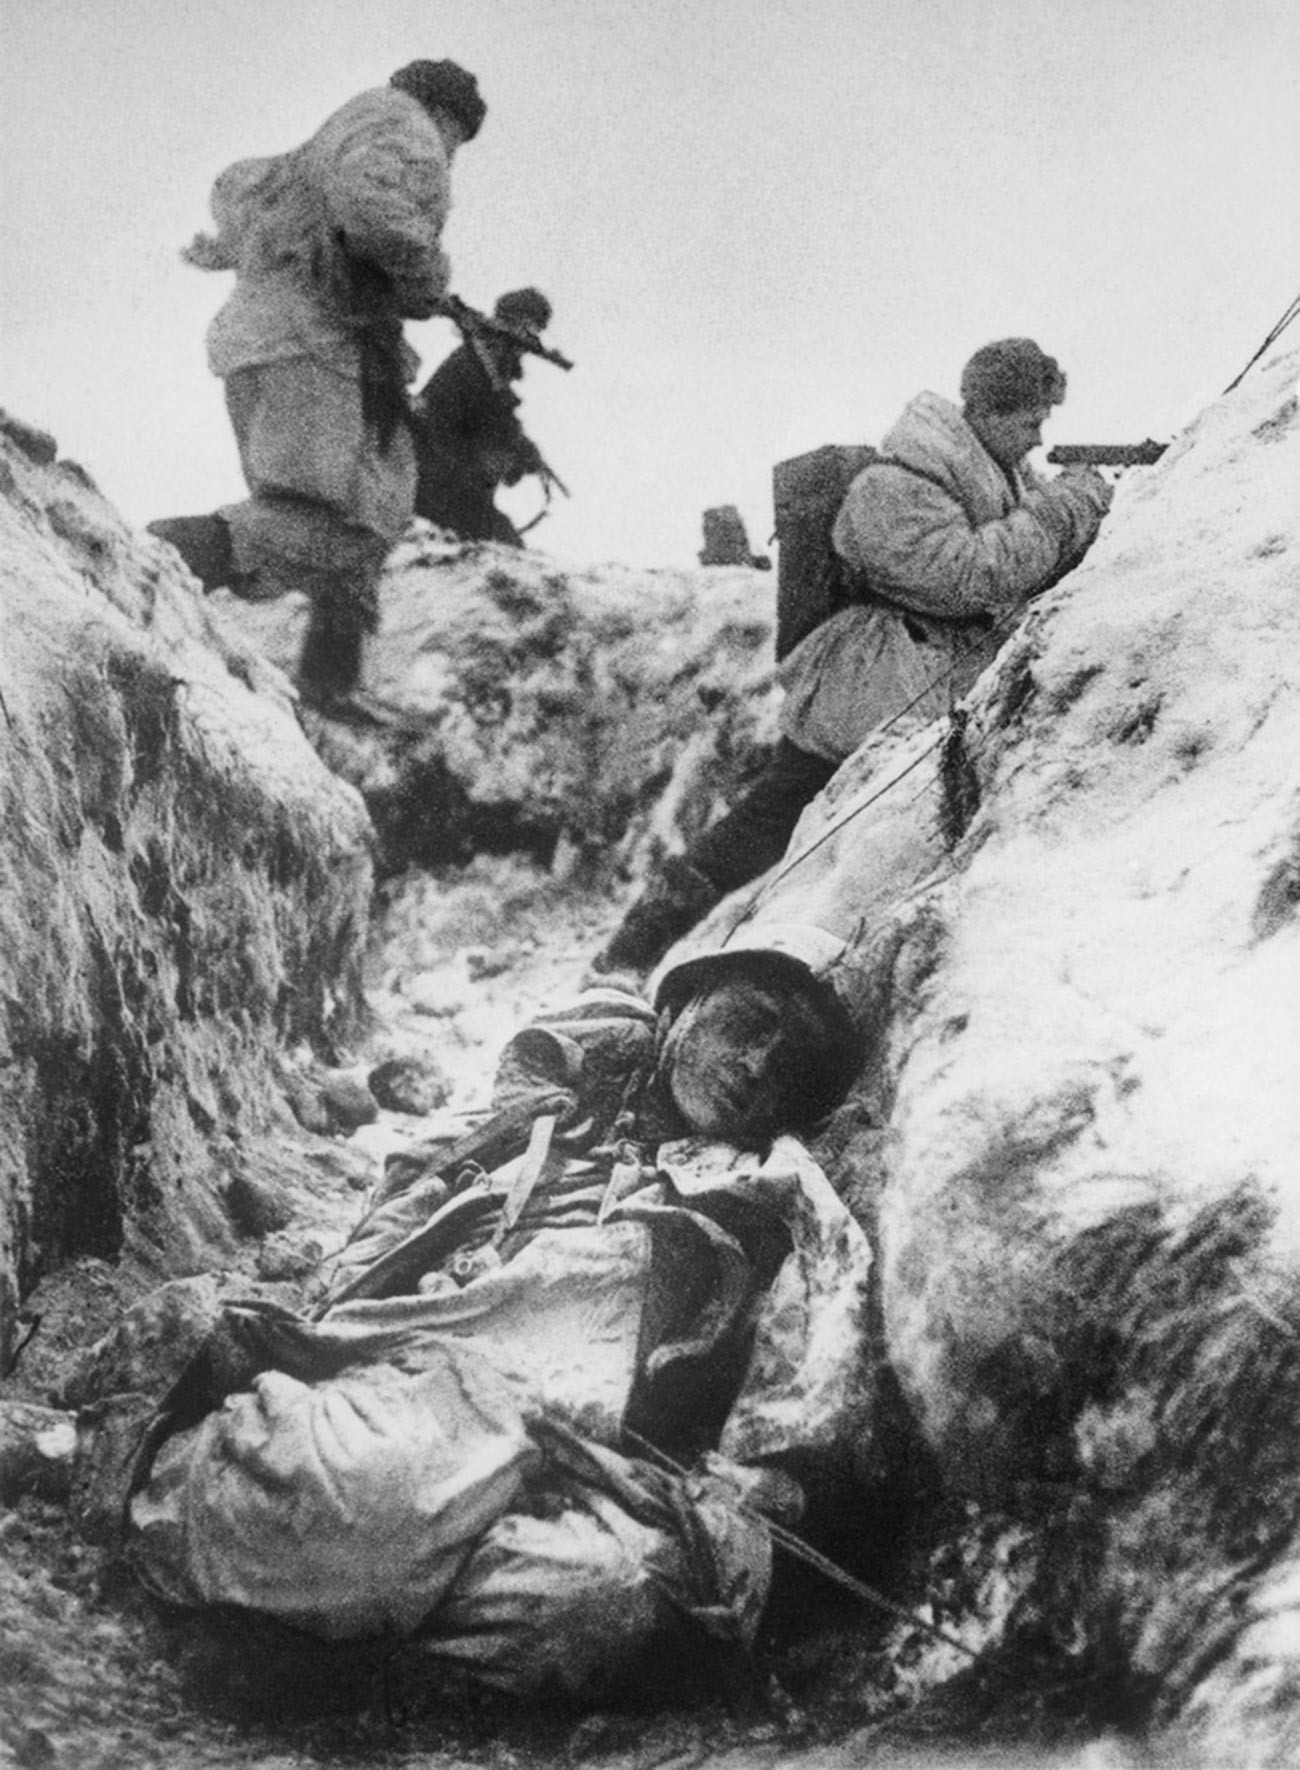 Des soldats soviétiques dans les tranchées pendant la Seconde Guerre mondiale